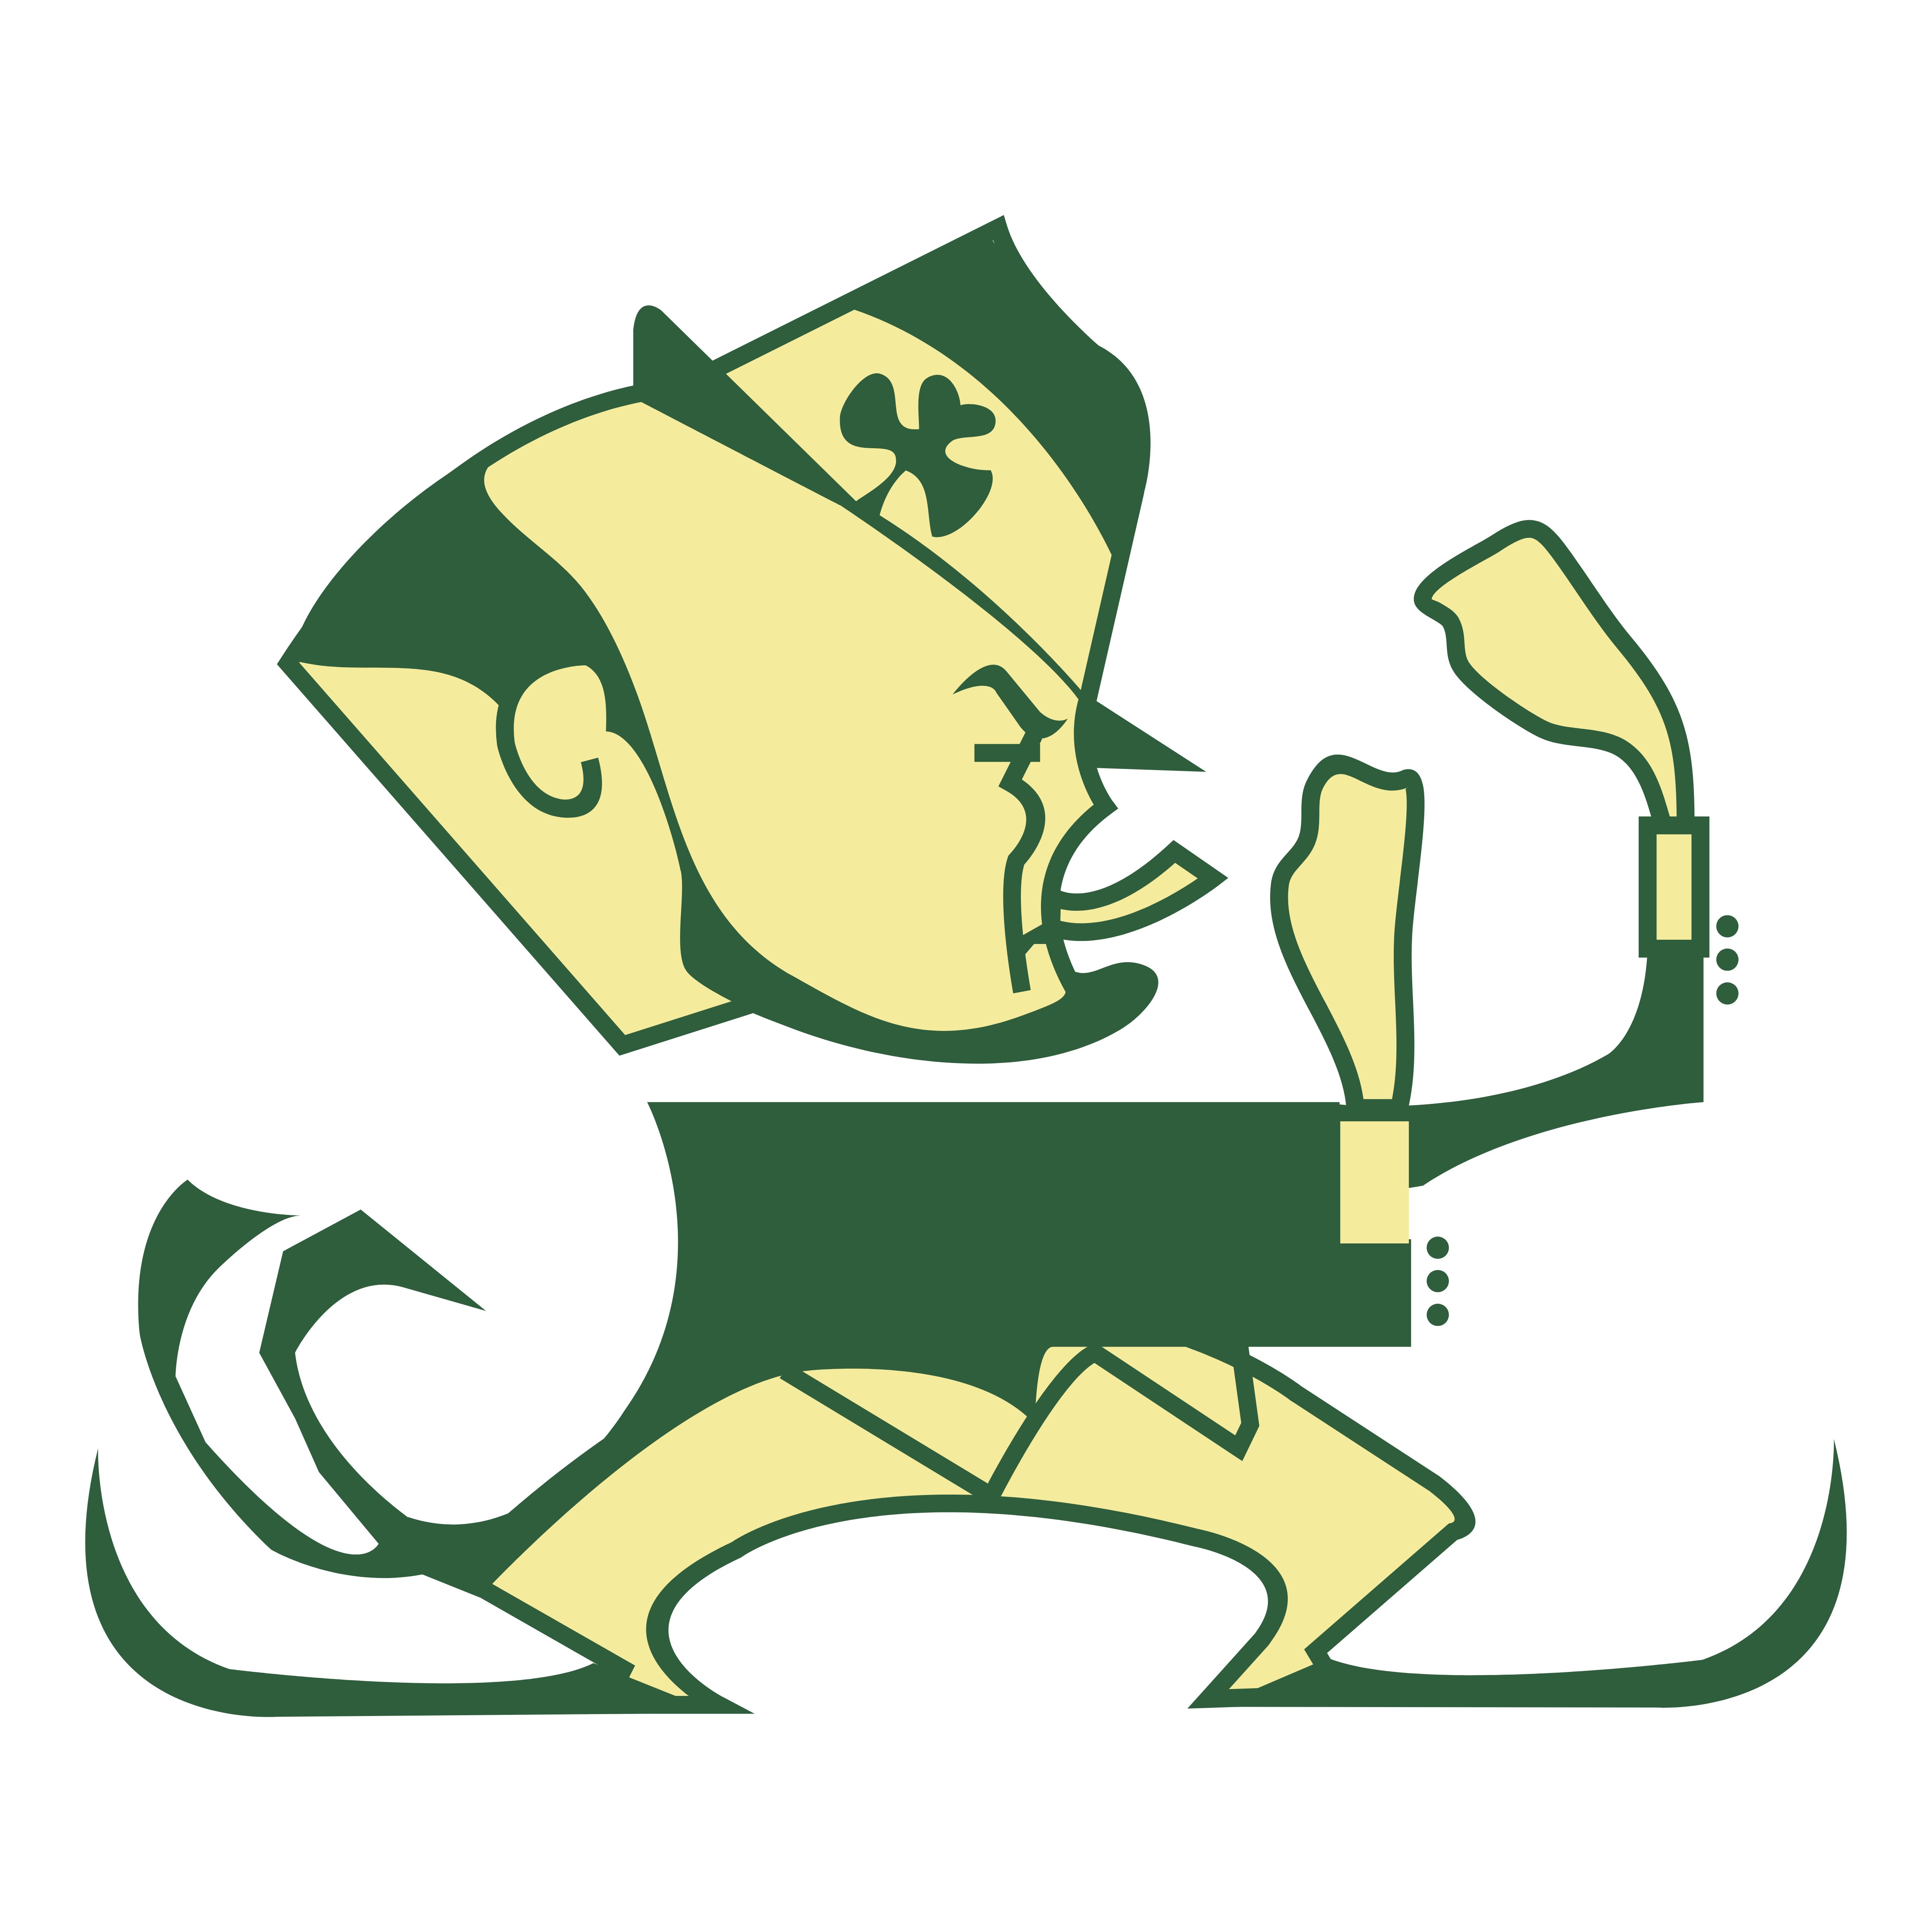 Notre Dame Fighting Irish – Logos Download